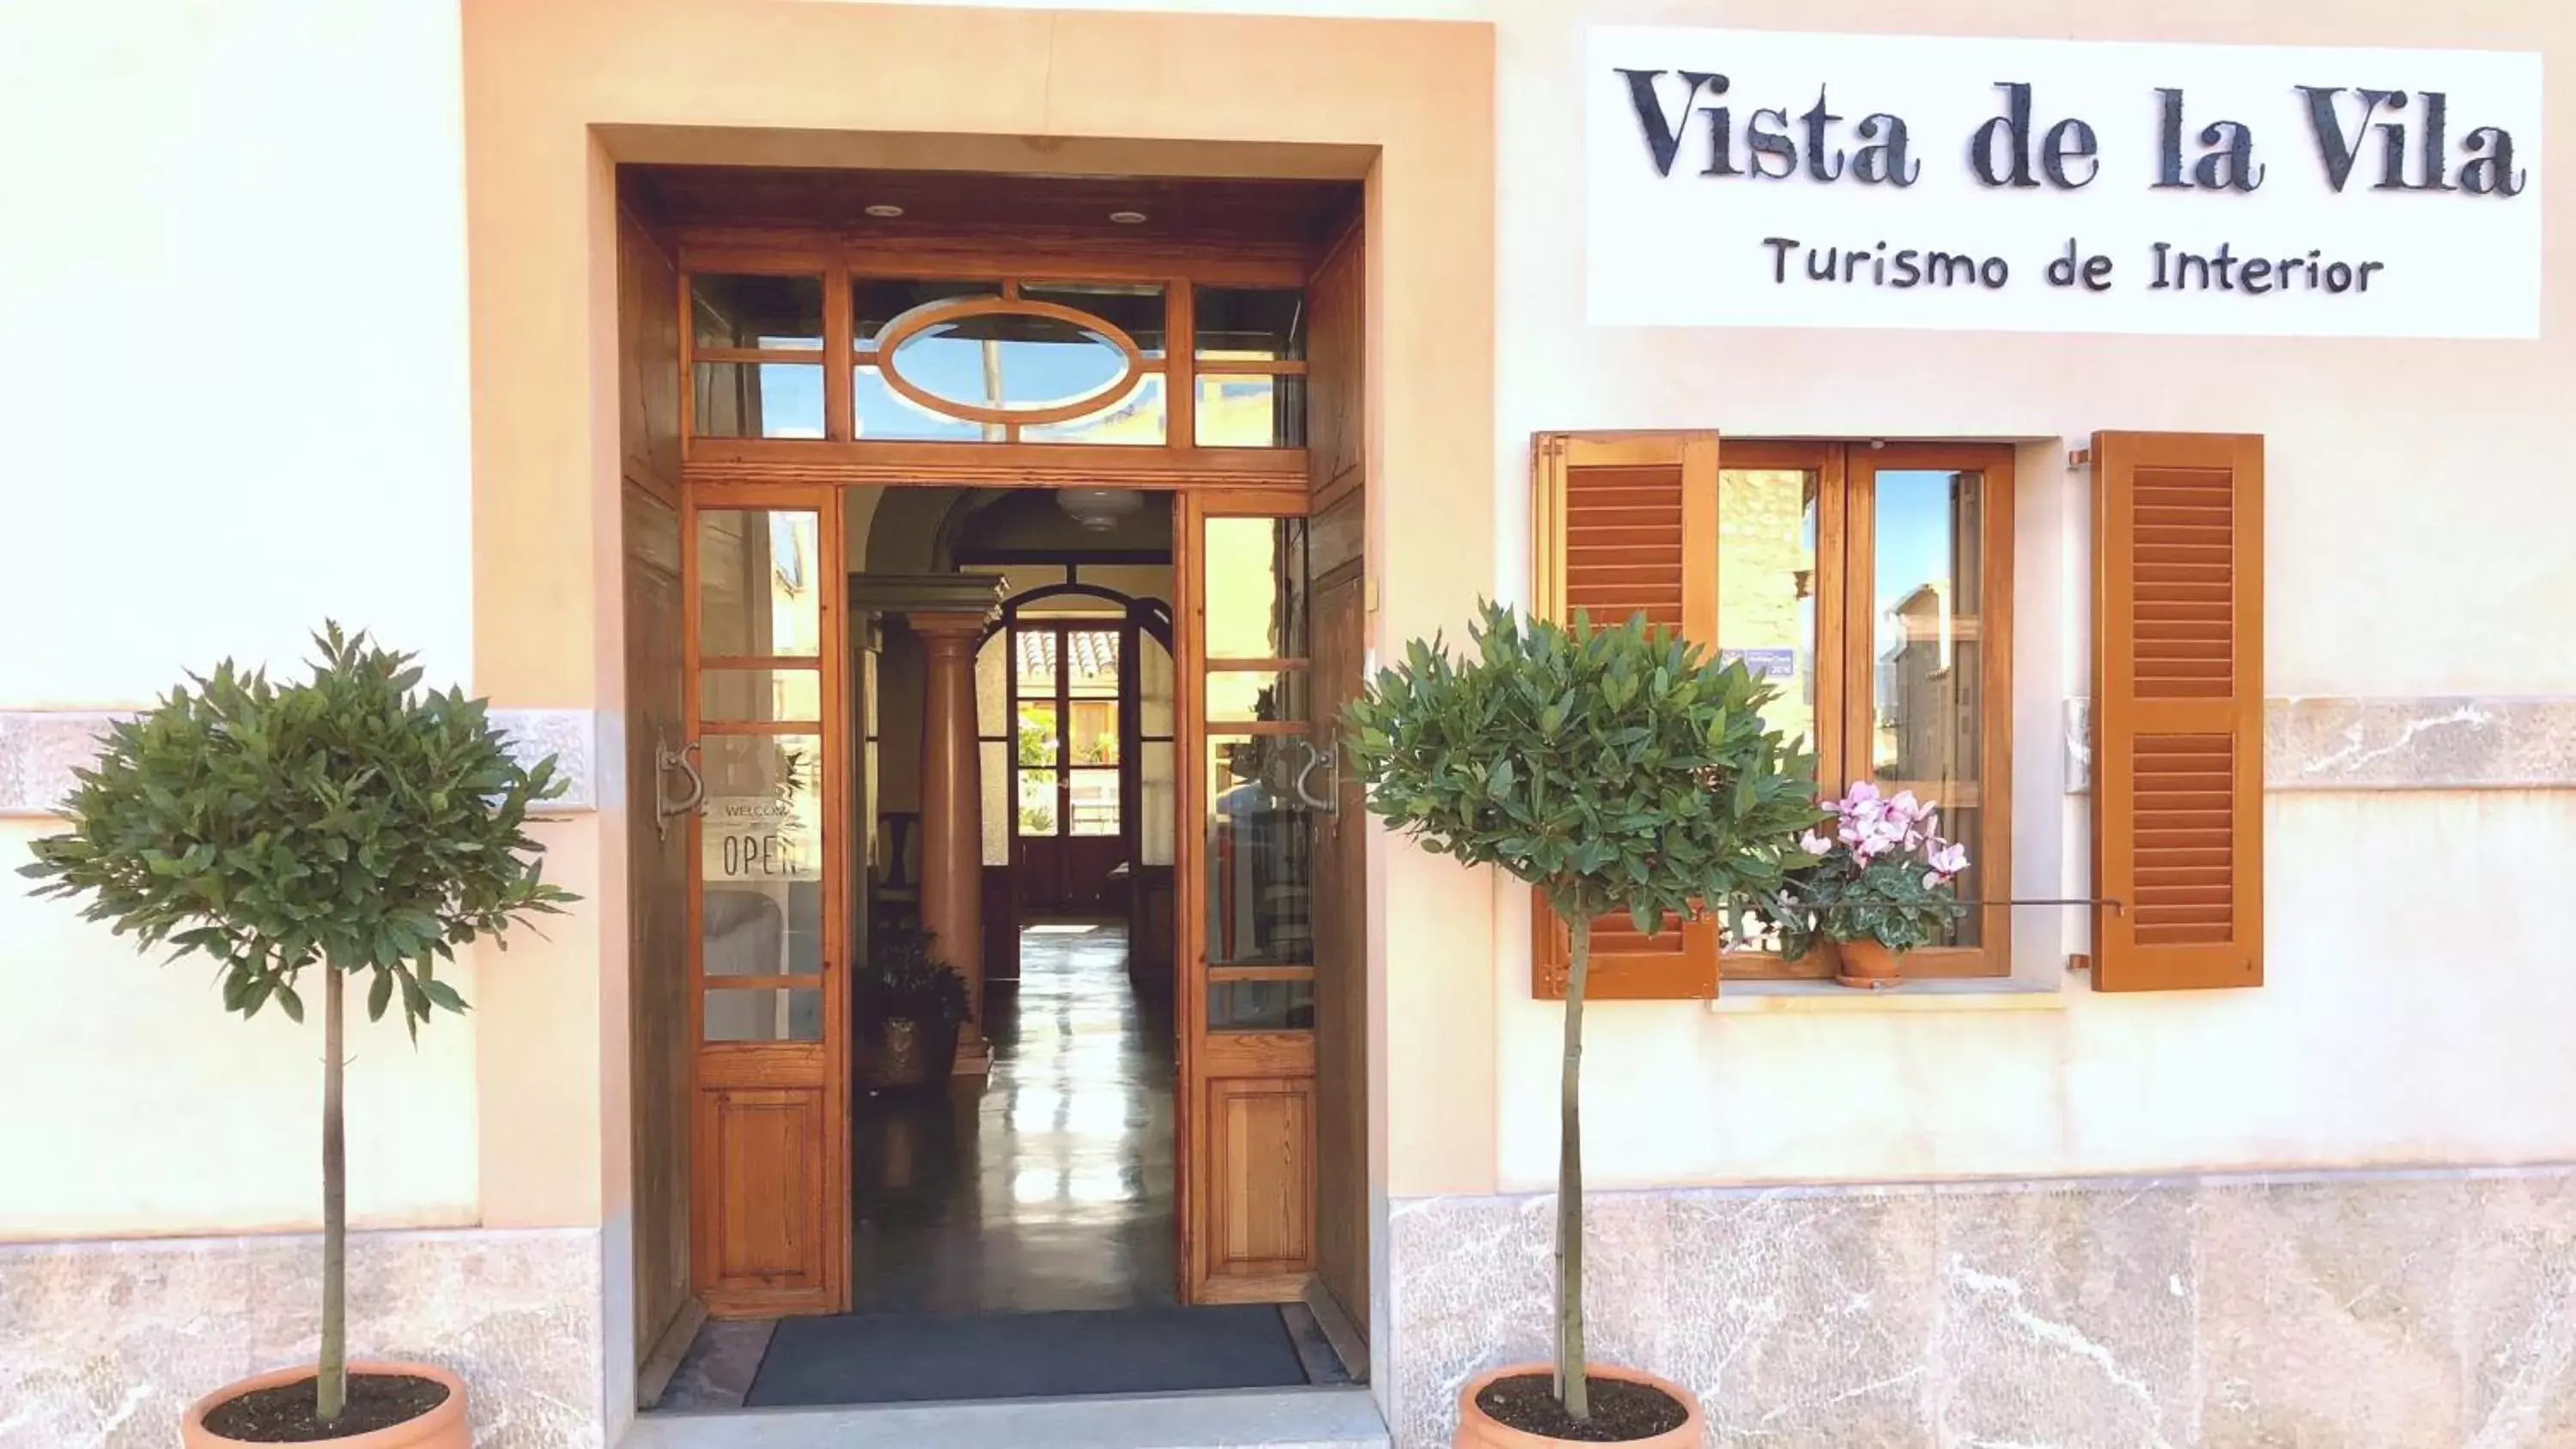 Facade/Entrance in Vista de la Vila - Turismo de interior.